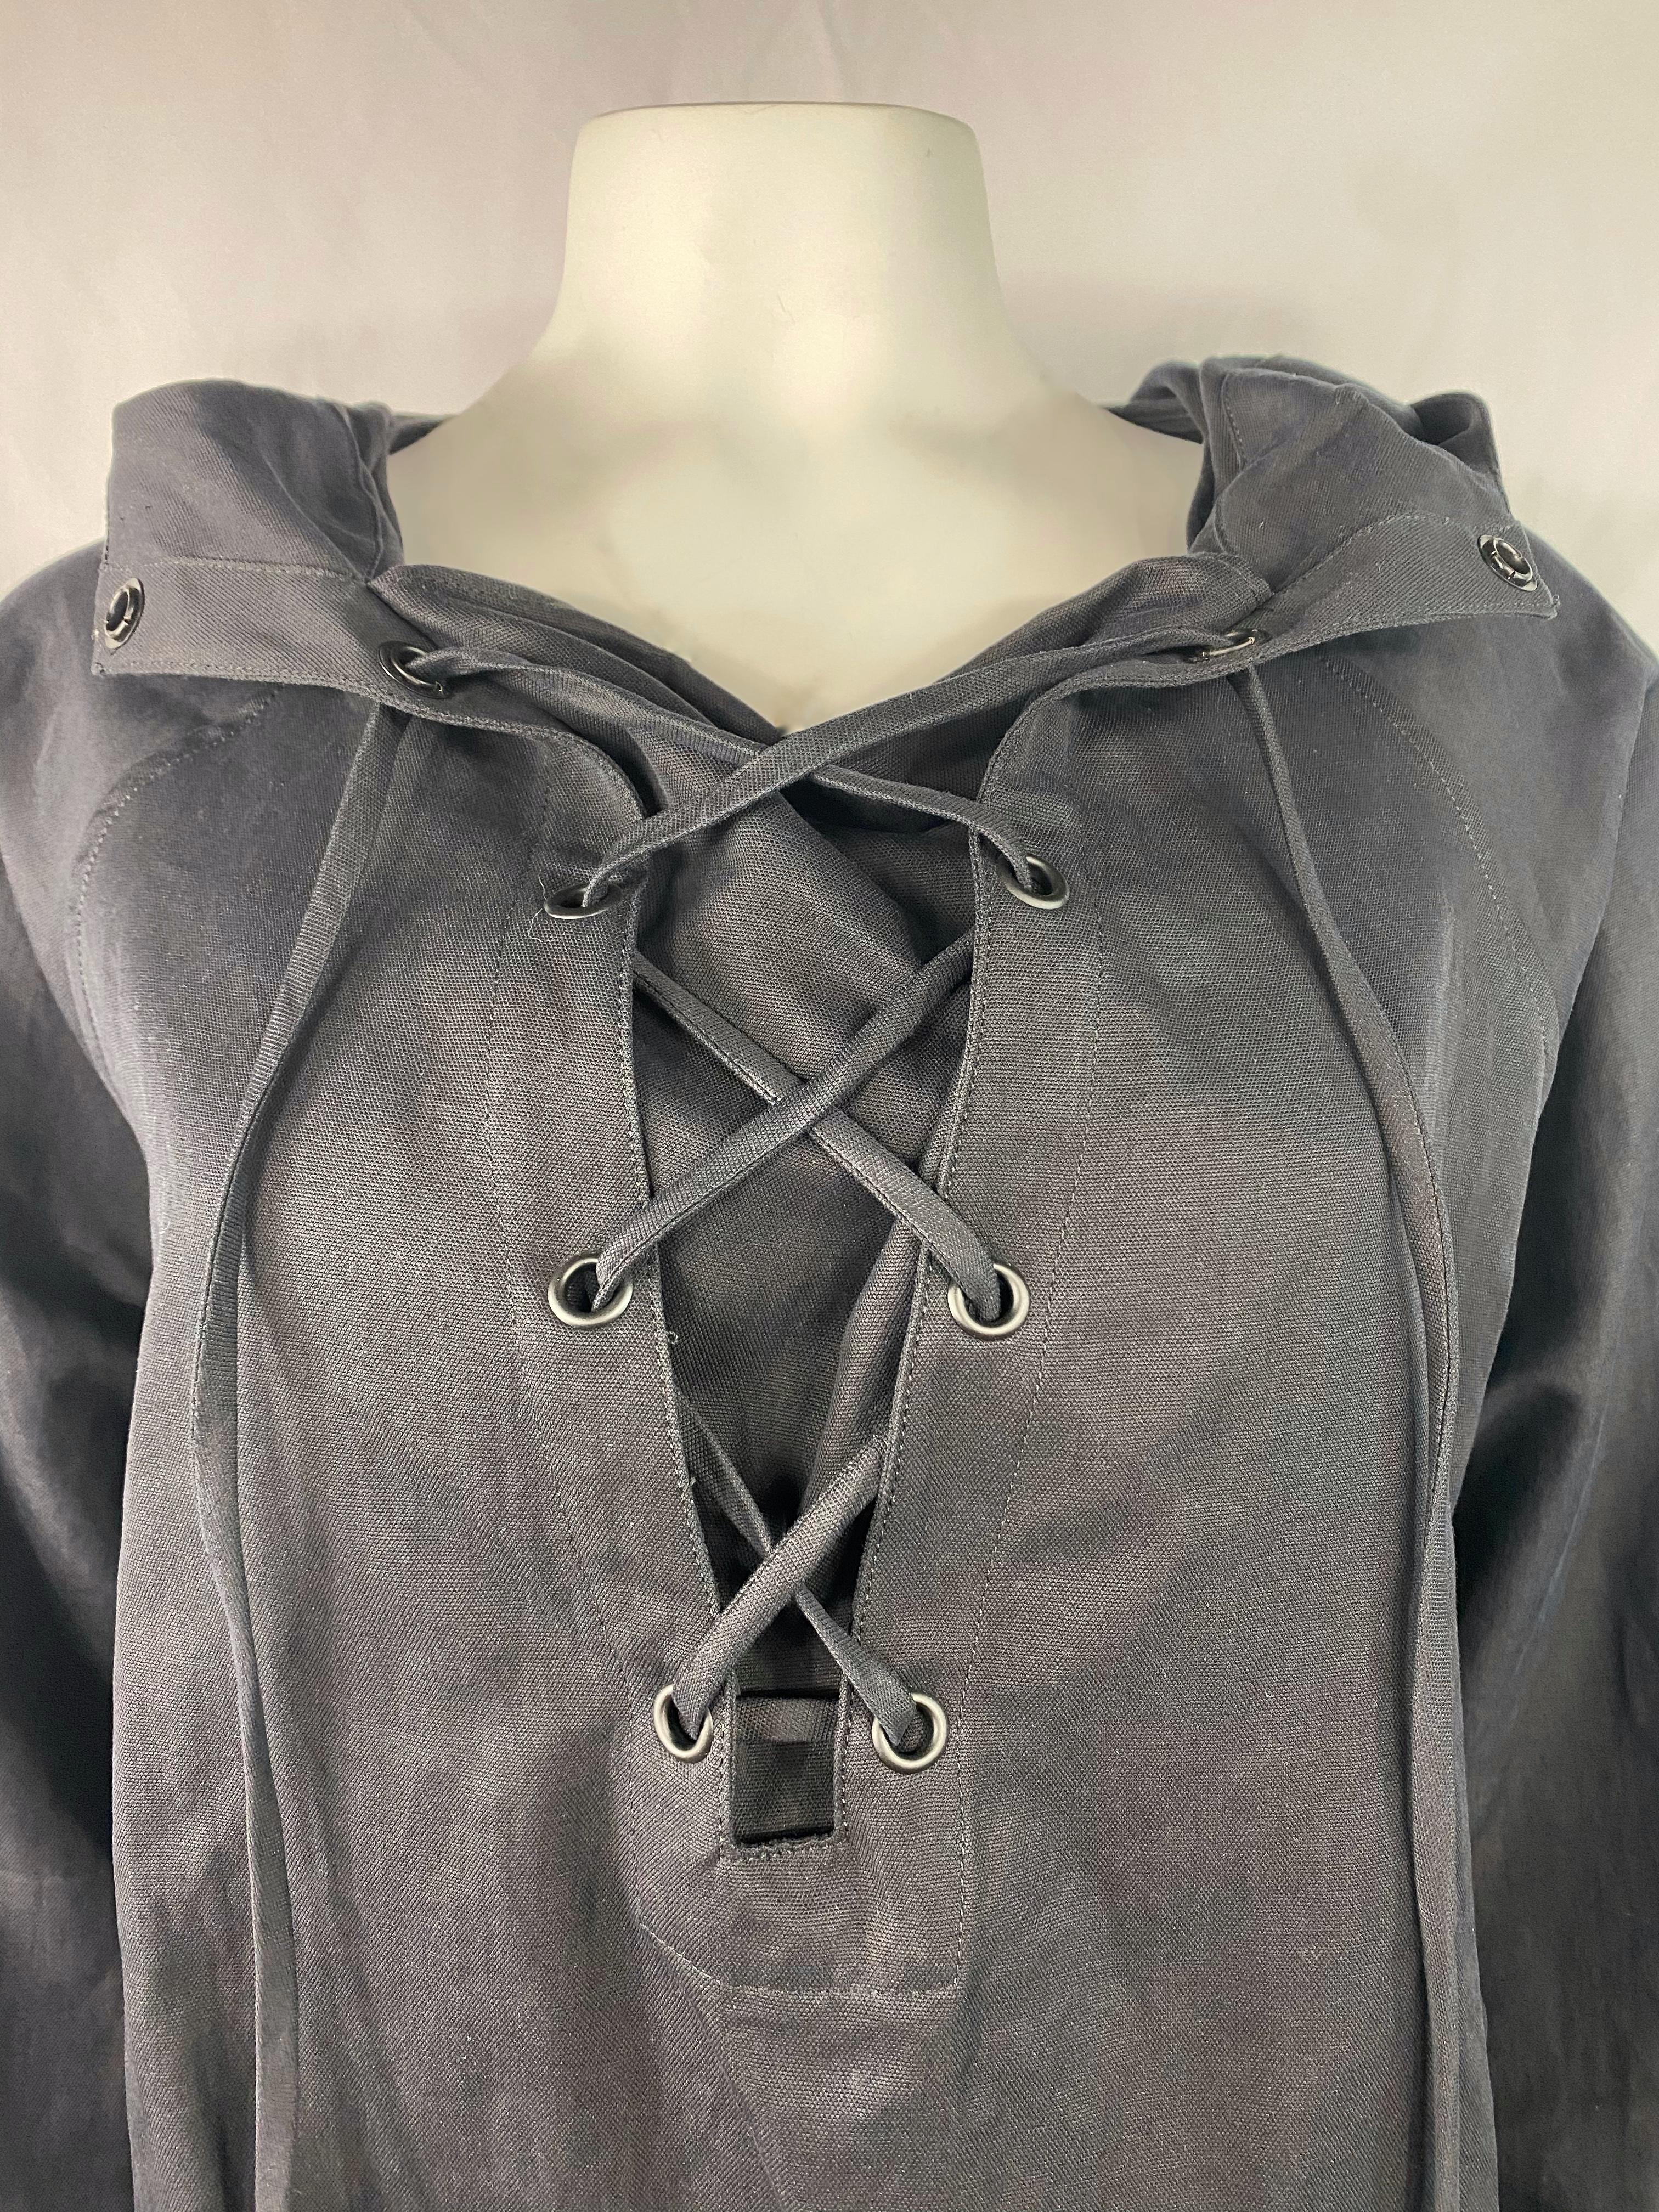 Einzelheiten zum Produkt:

Das Oberteil aus schwarzer Baumwollmischung hat eine Kapuze auf dem Rücken, einen Spitzenverschluss auf der Vorderseite und Taschen an den Seiten. Hergestellt in den USA.